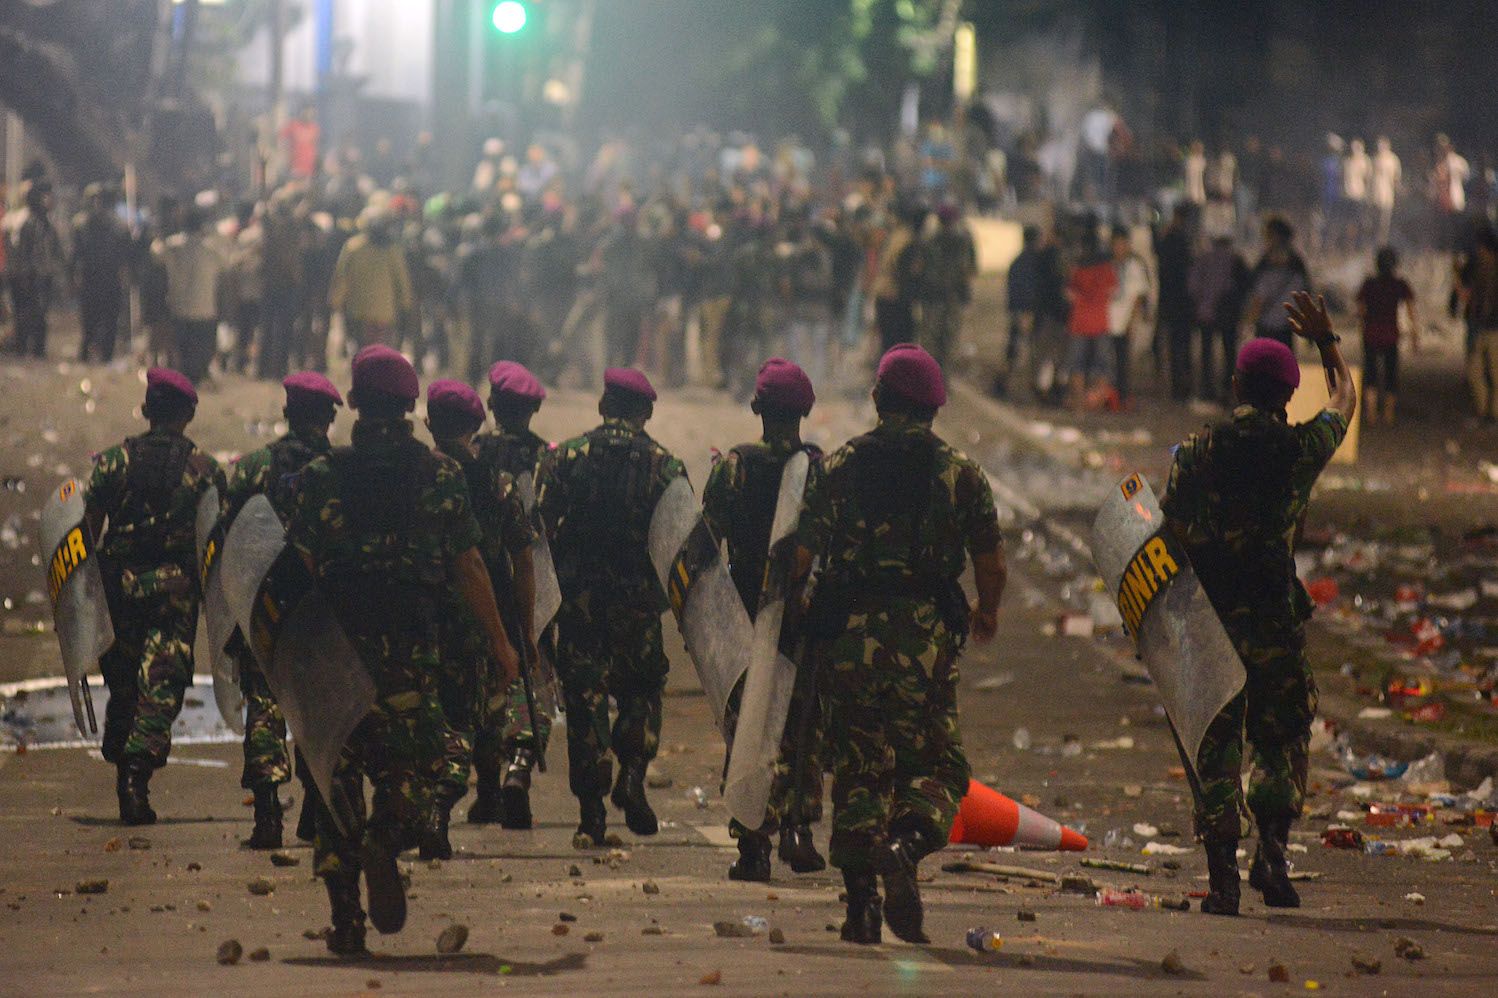 Kejati DKI Jakarta Terima Barang Bukti dan 218 Tersangka Kasus Kerusuhan 21-22 Mei